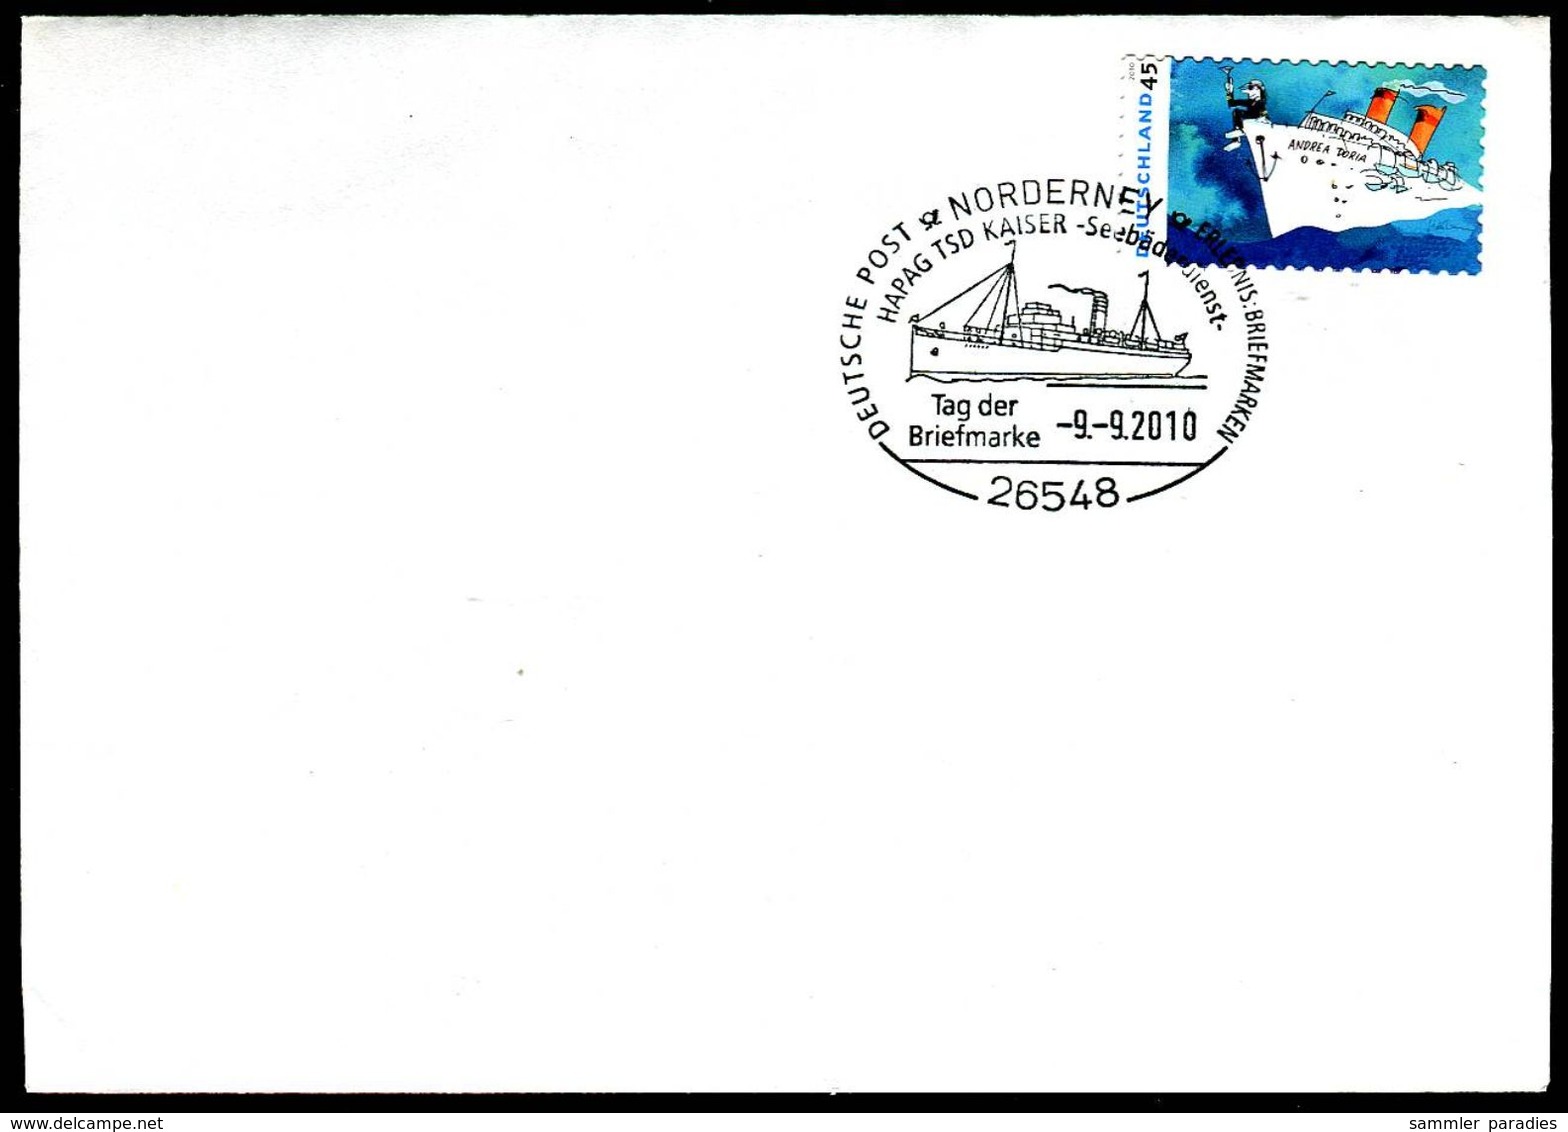 01533) BRD - Brief Michel 2807 - SoST Vom 09.09.2010 In 26548 NORDERNEY, TDS Kaiser, Seebäderdienst, Tag Der Briefmarke - Maschinenstempel (EMA)